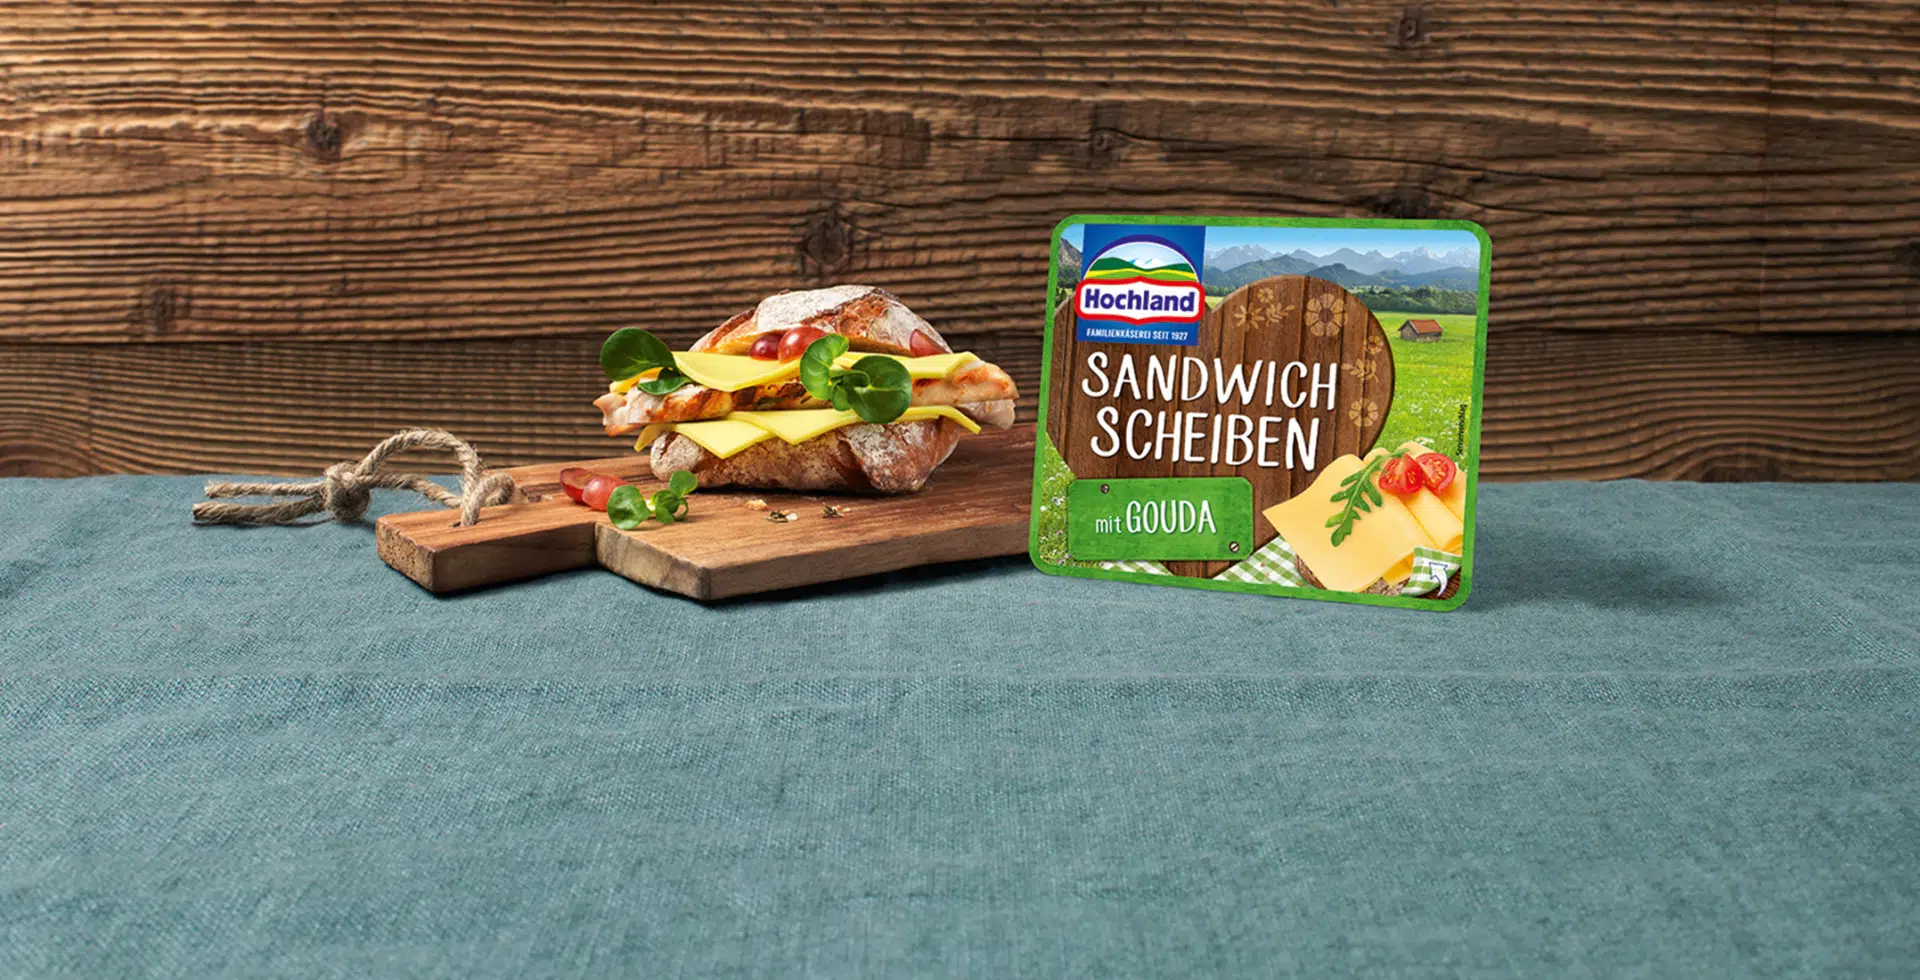 Sandwich Scheiben Gouda